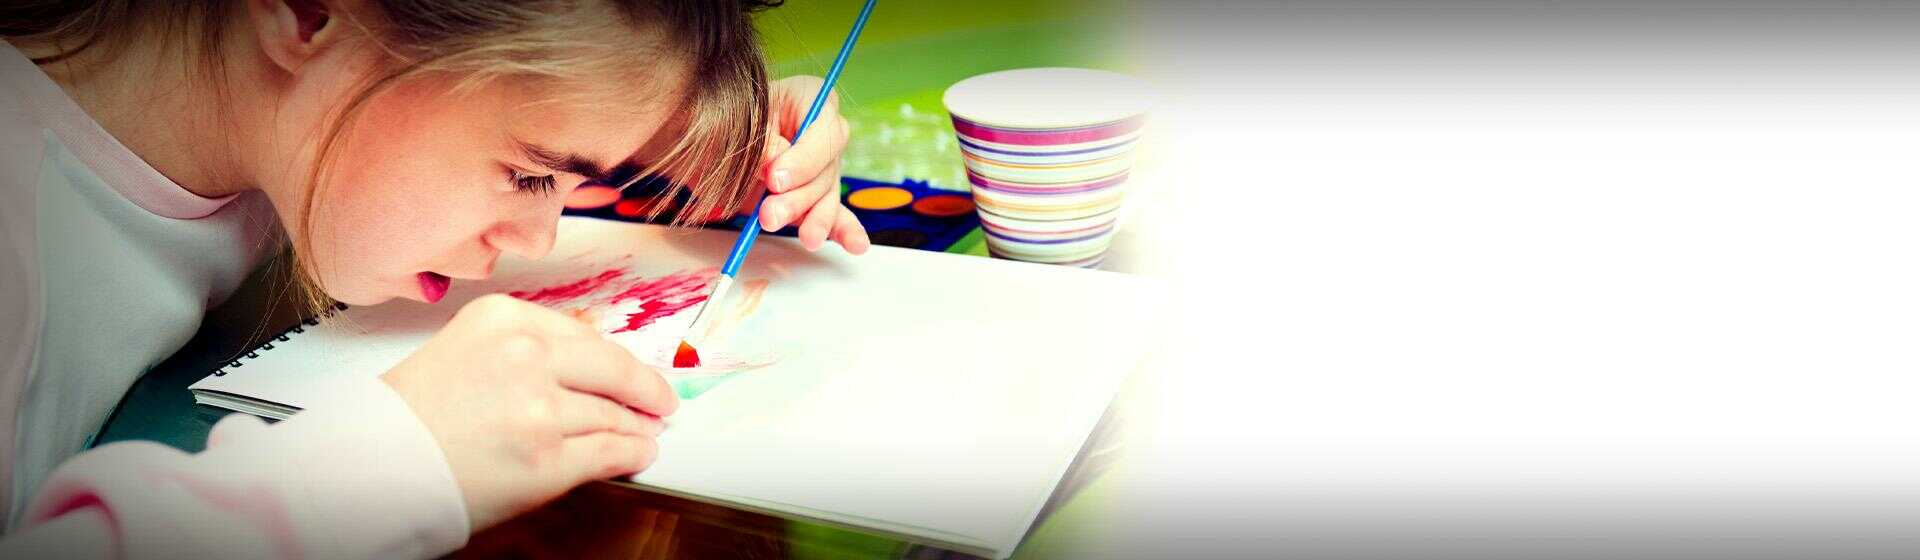 Slajd #2 - Małe dziecko maluje